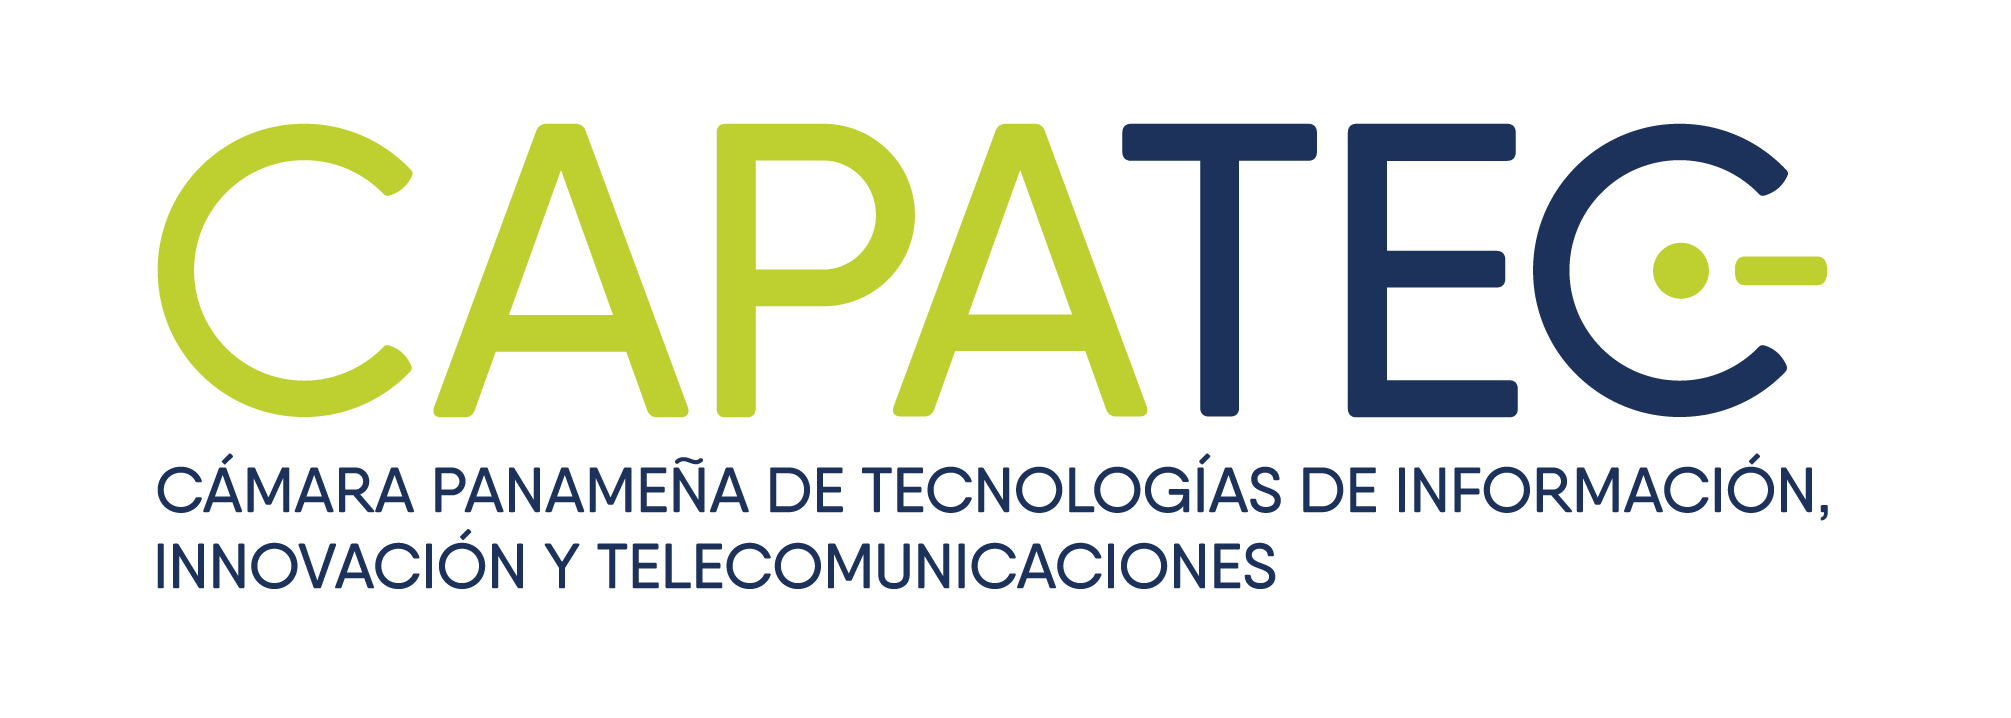 Logo CAPATEC